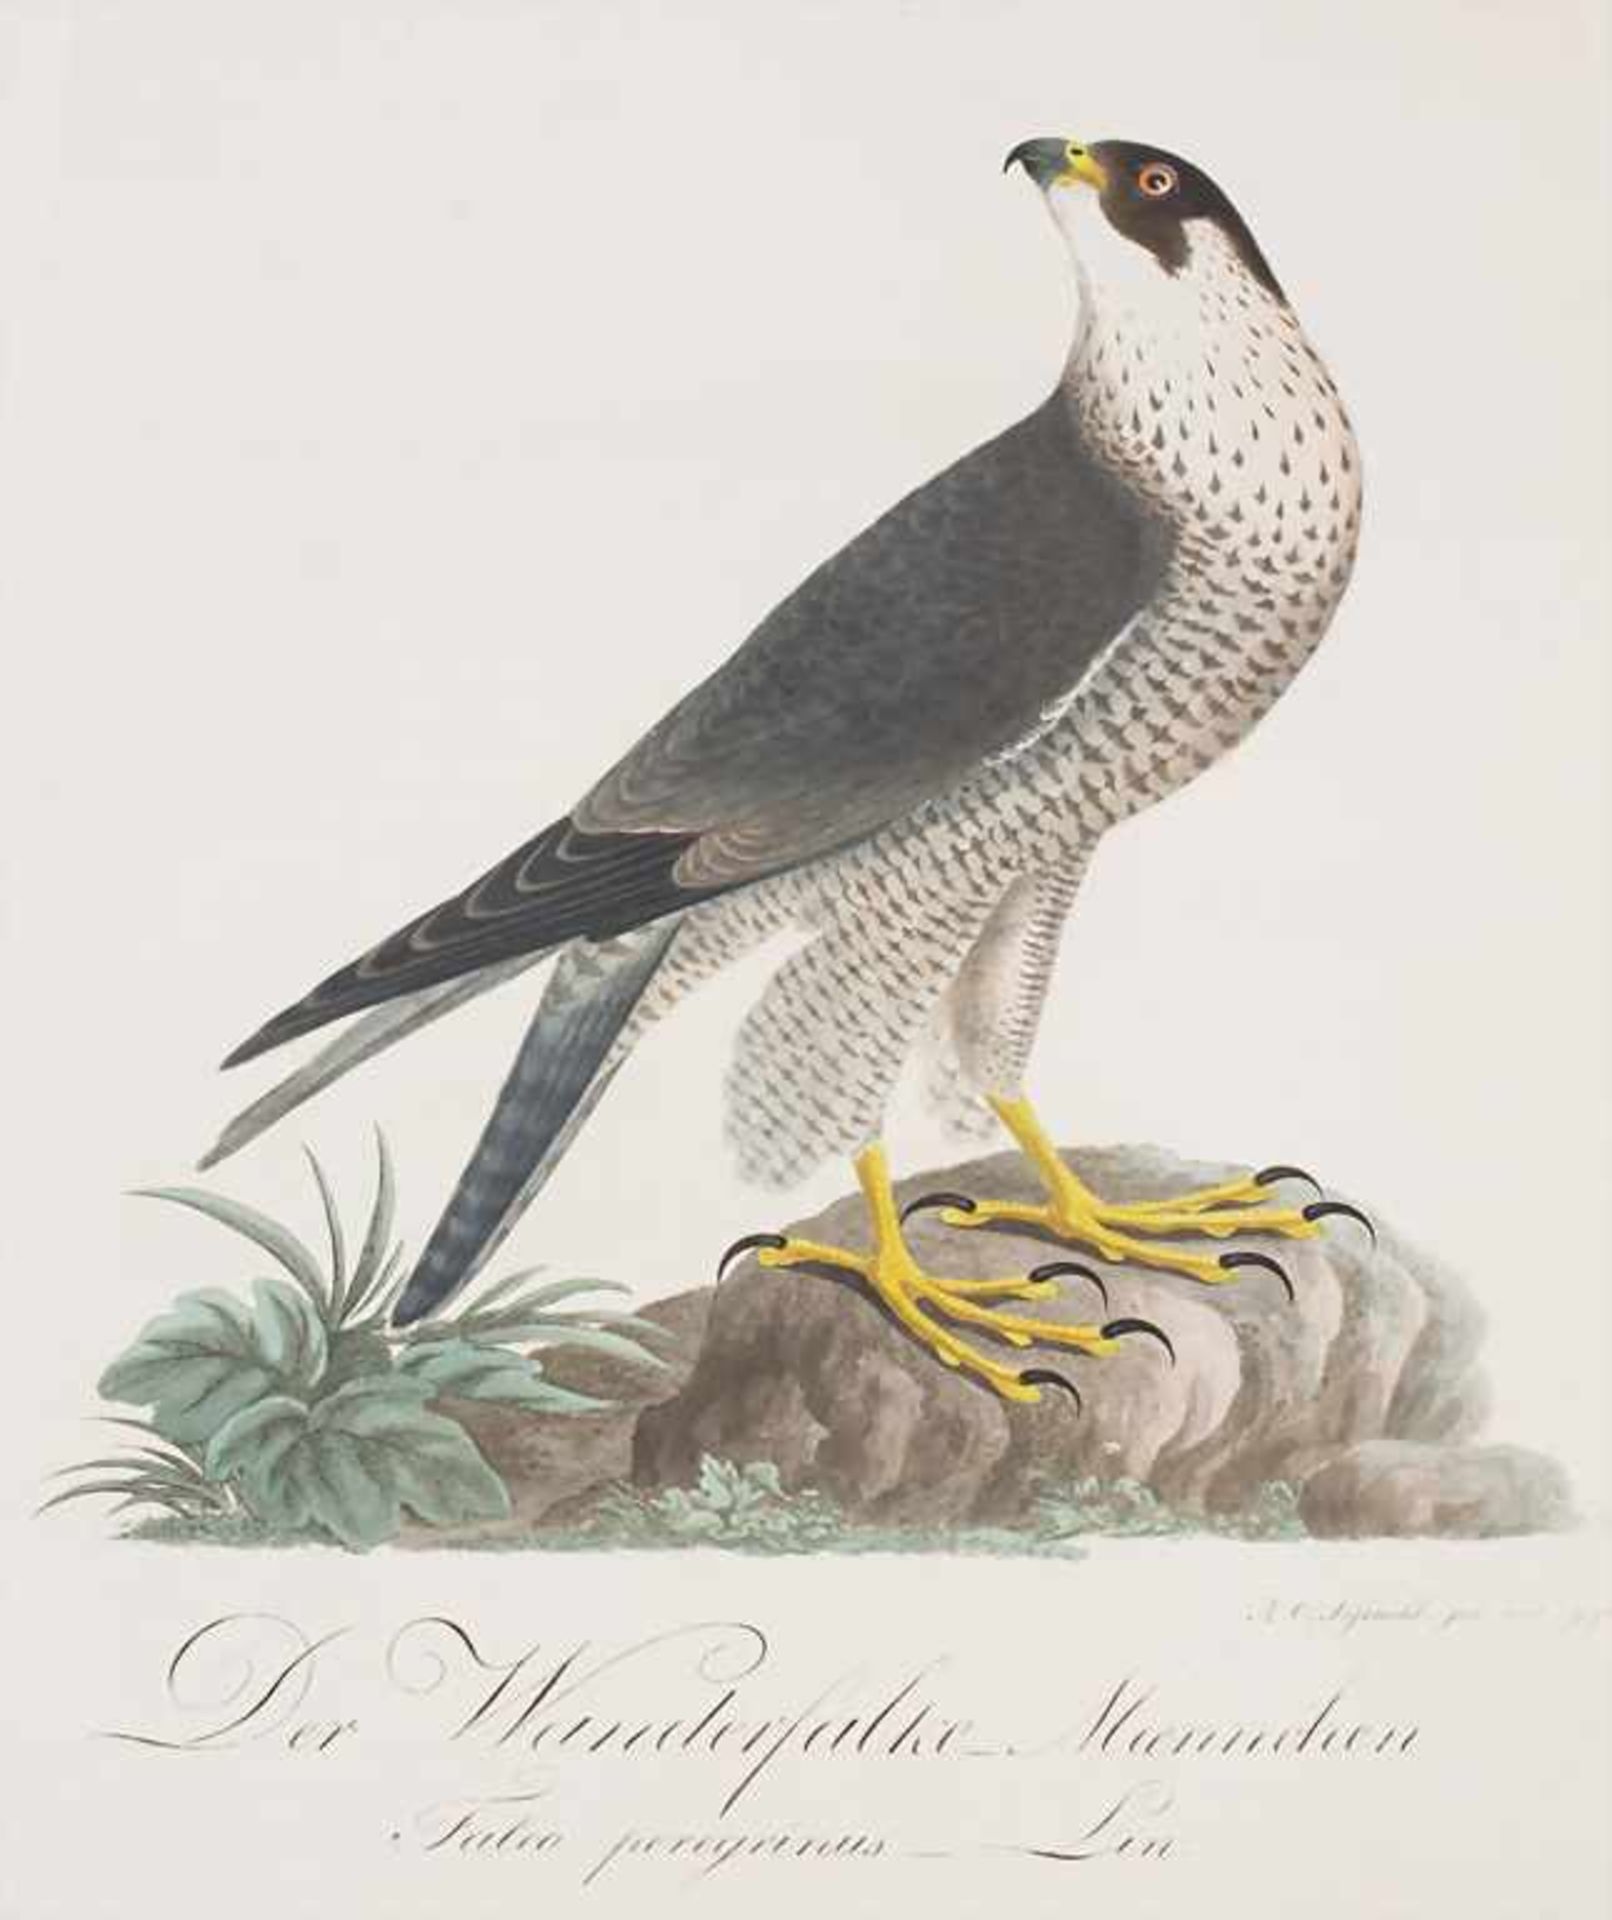 J.C. Susemihl (1767-nach 1848), 'Teutsche Ornithologie oder Naturgeschichte aller VögelTechnik: 20 - Image 6 of 17